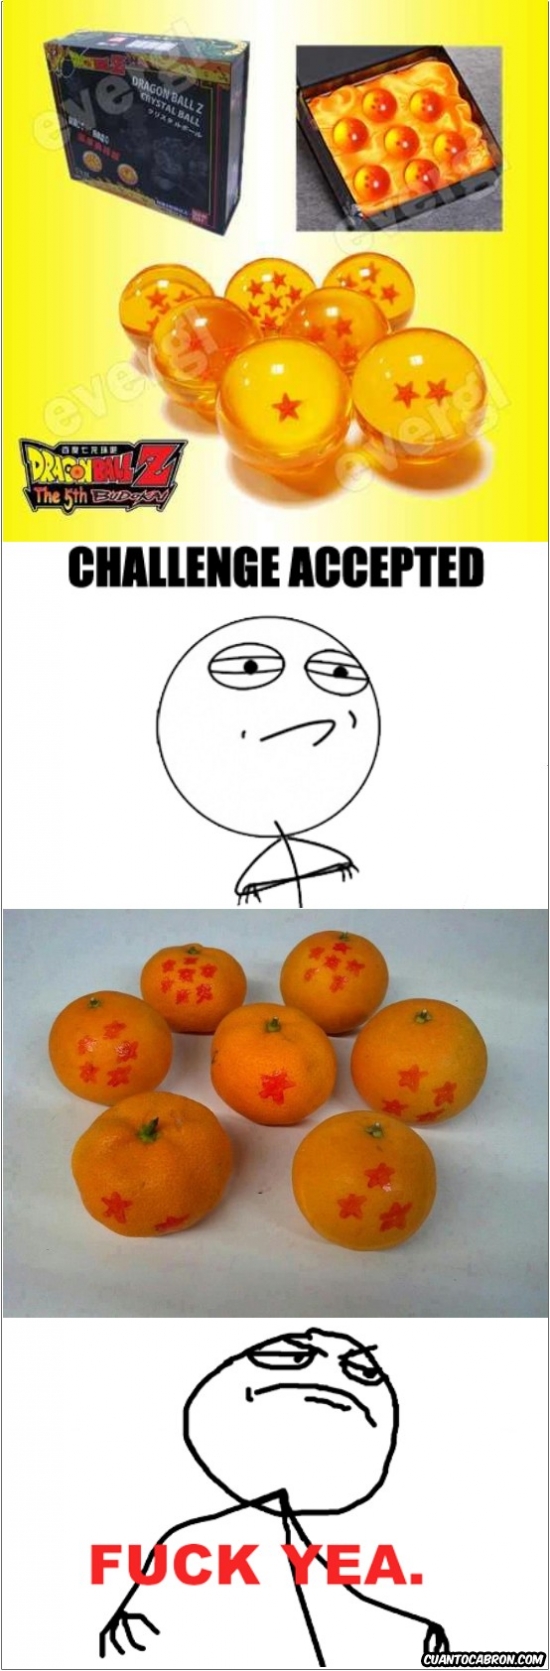 Challenge_accepted - Naranjas del dragón, fuck yea